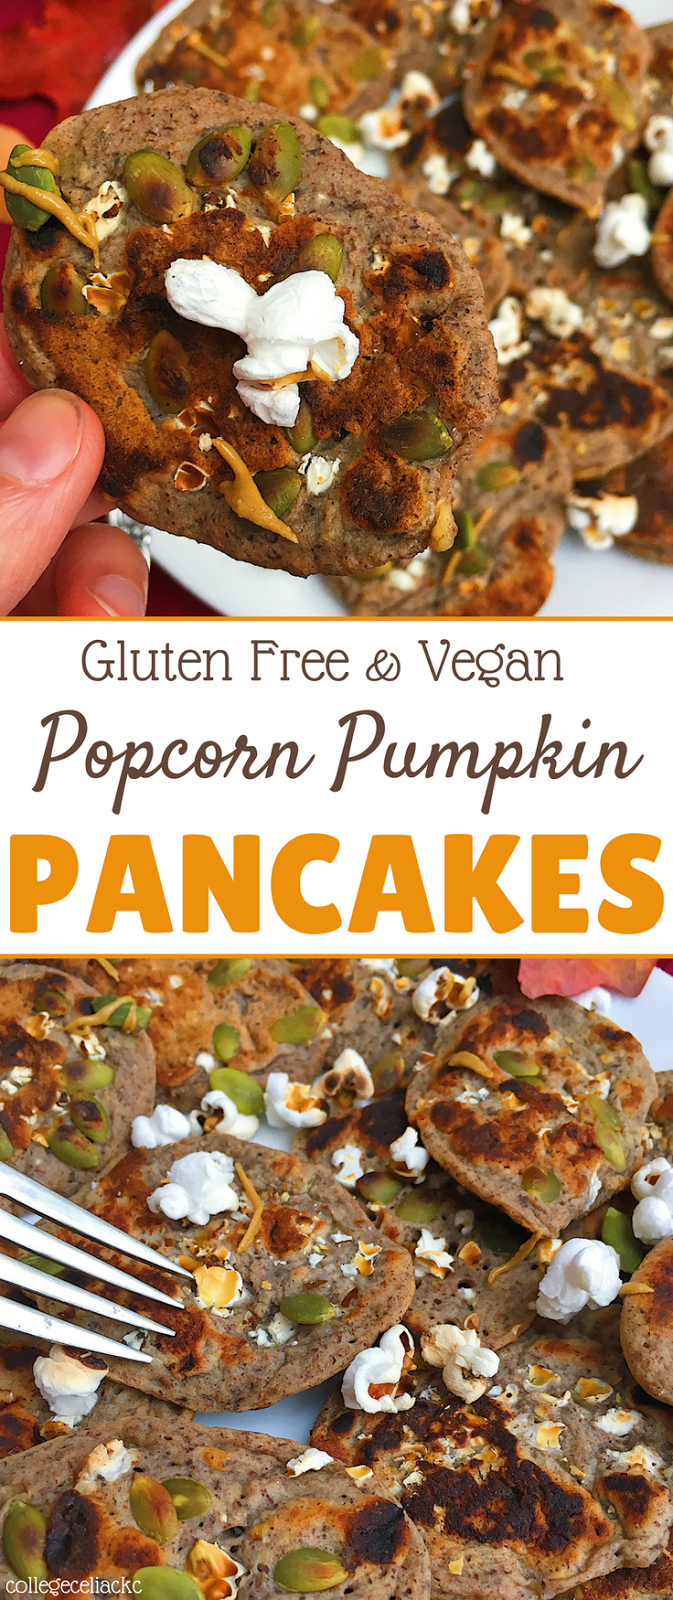 Popcorn Pumpkin Pancakes (Gluten Free, Vegan)